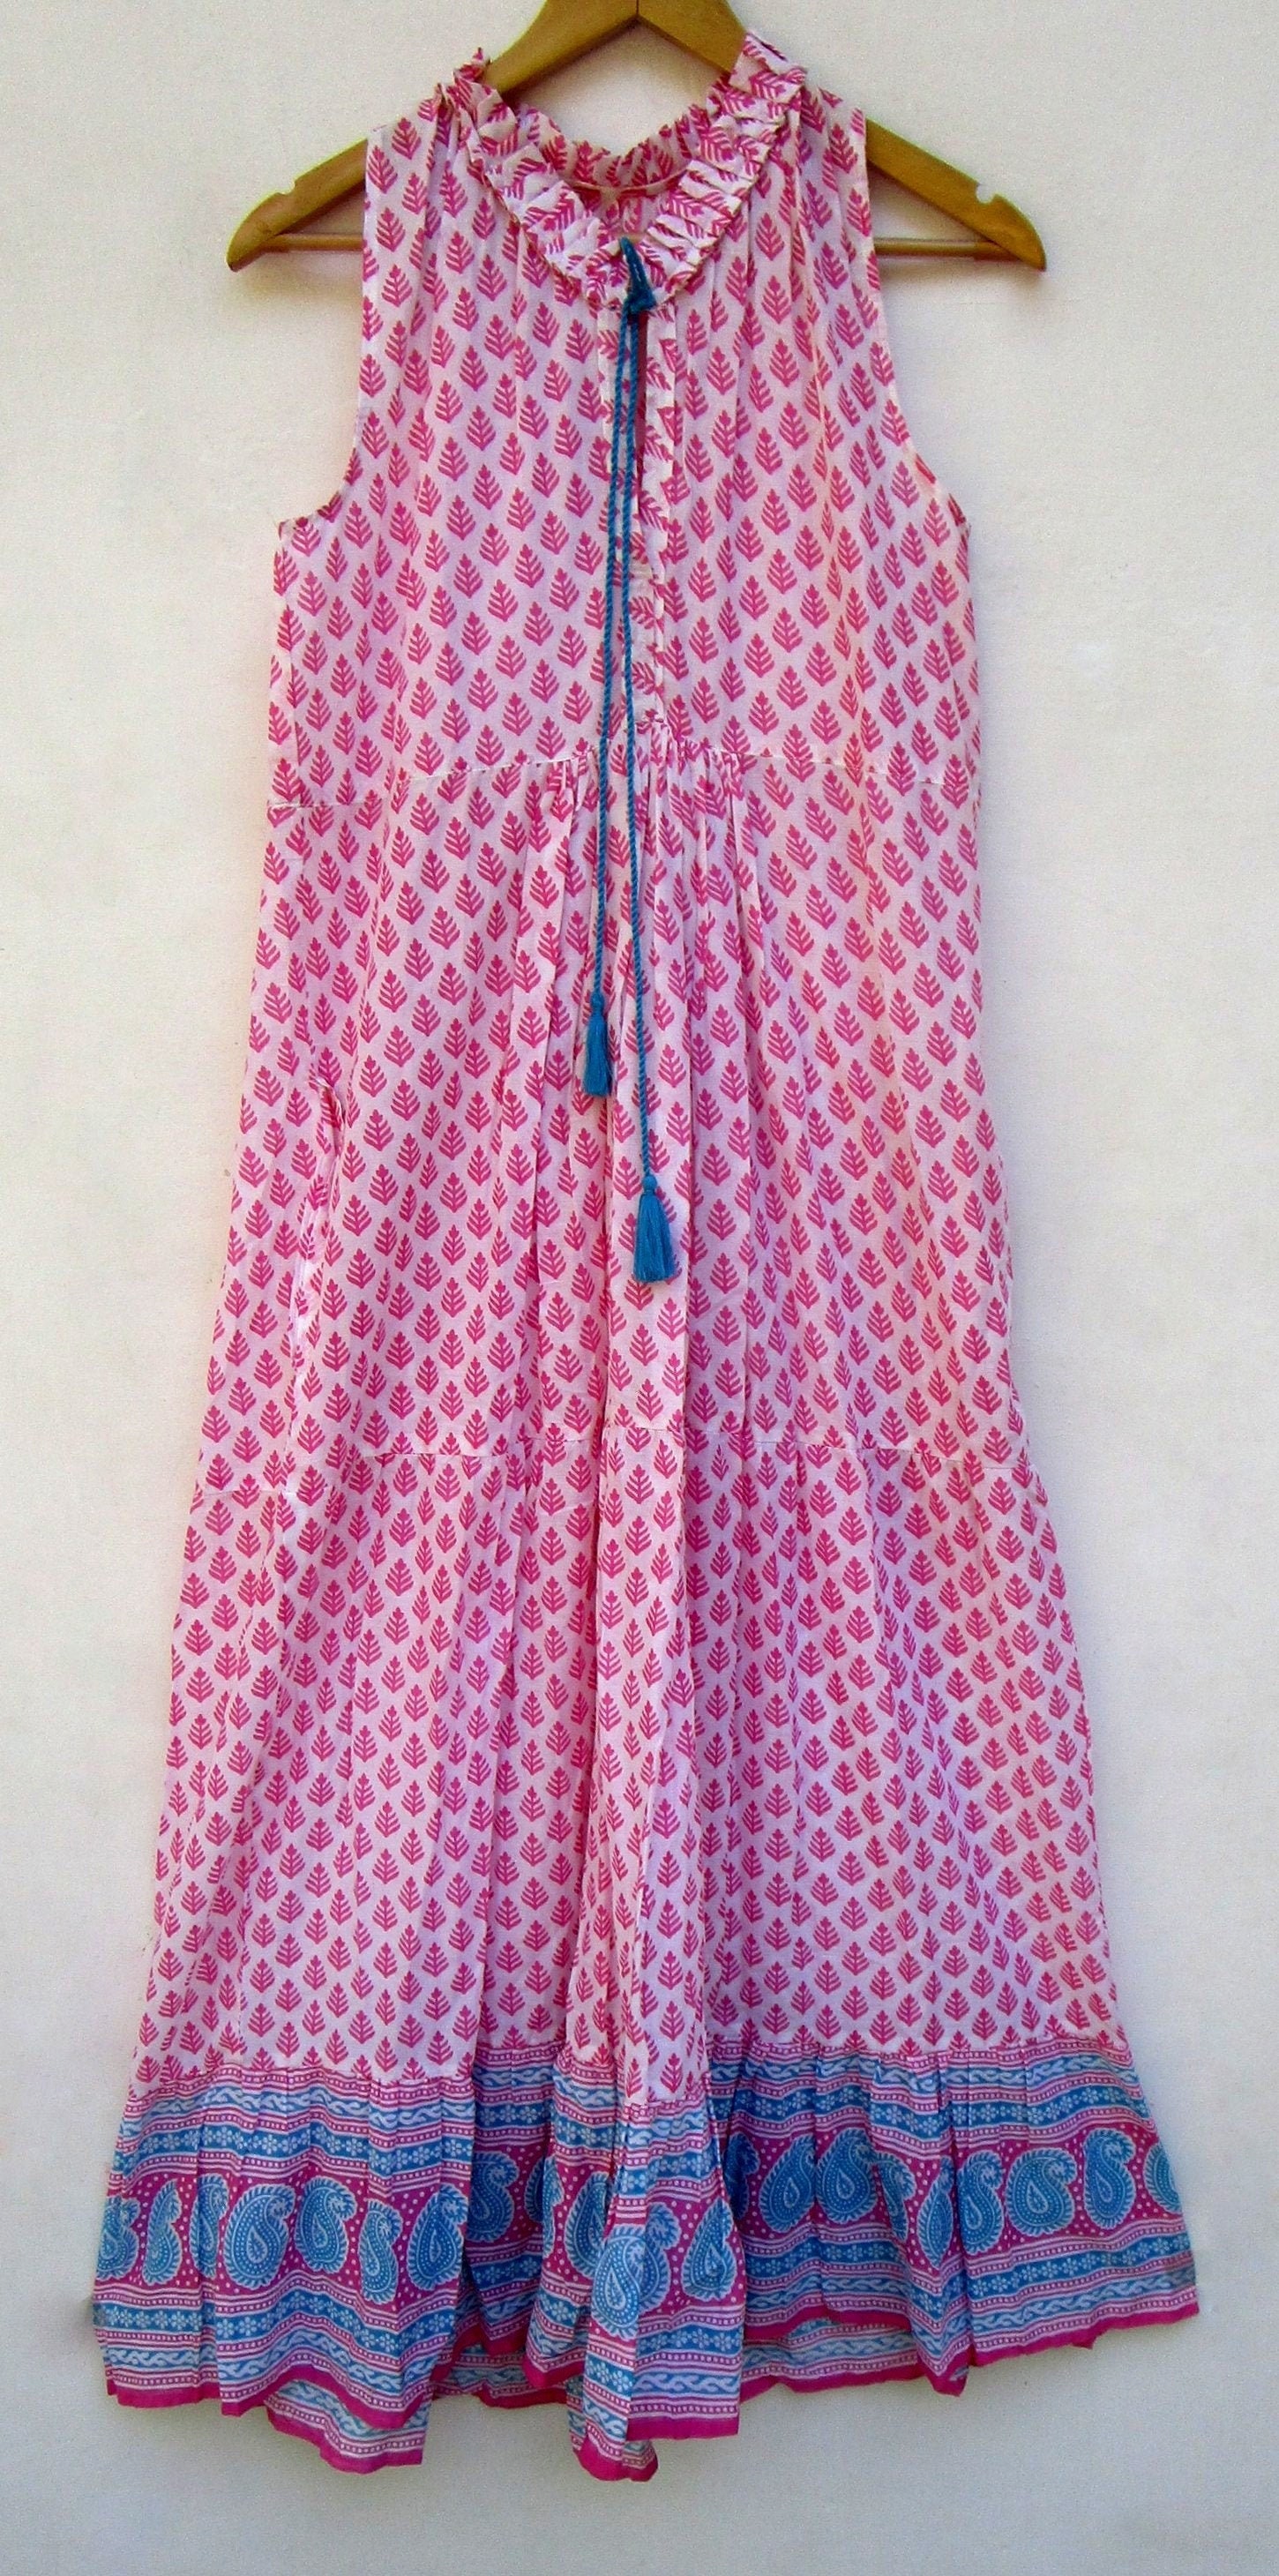 Generic Summer Maxi Dress Women Pink Floral Print Boho Beach Dress